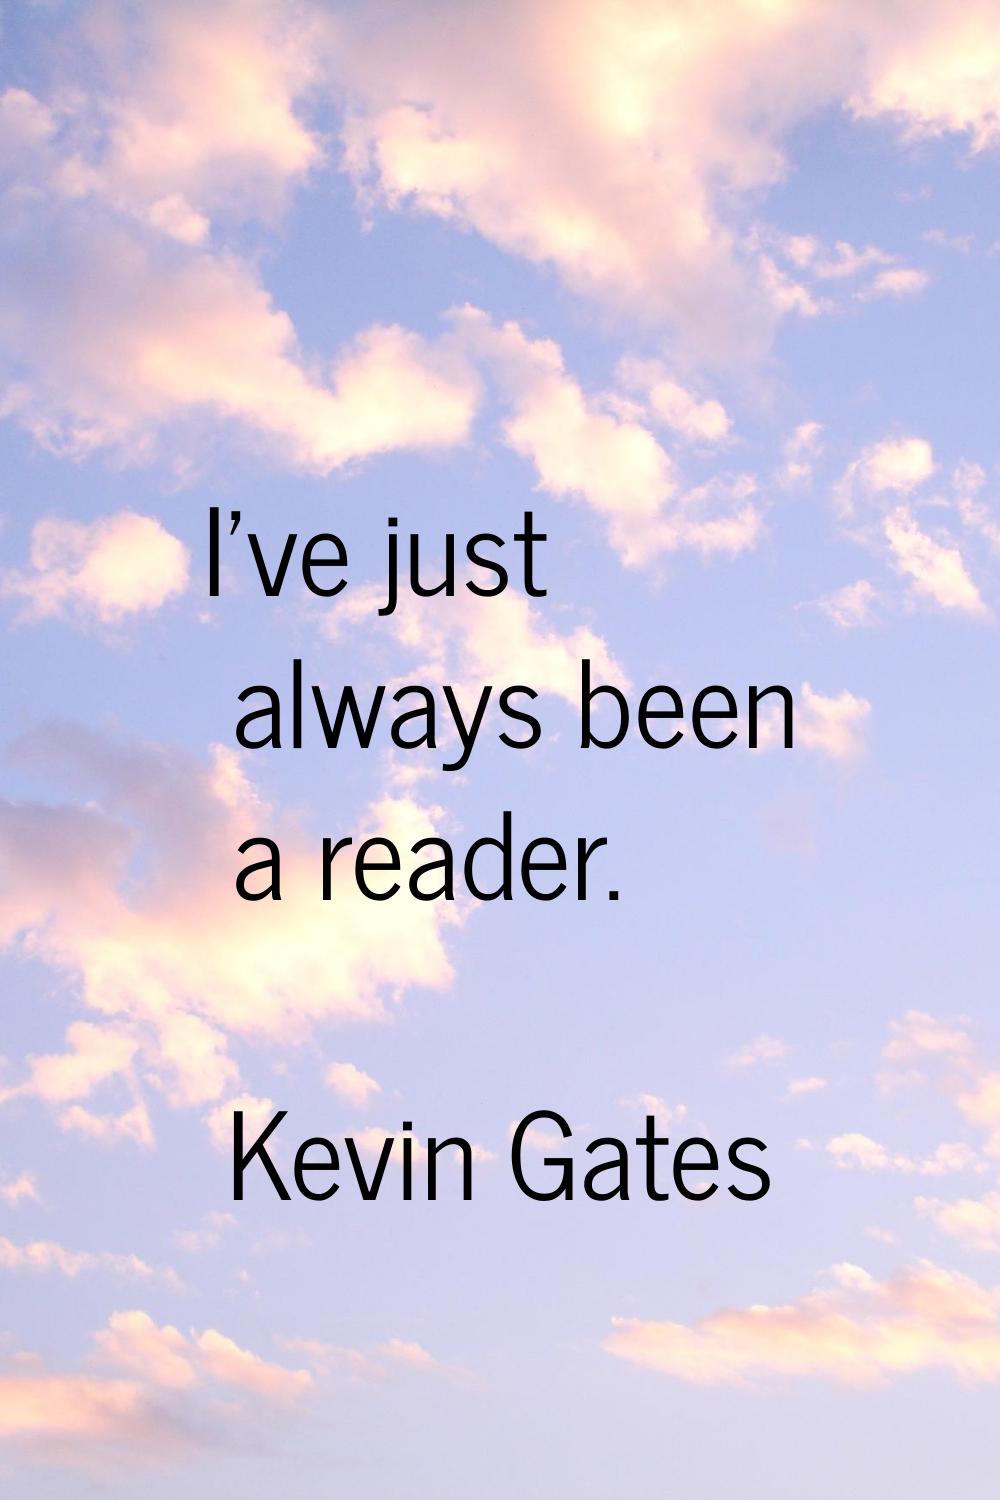 I've just always been a reader.